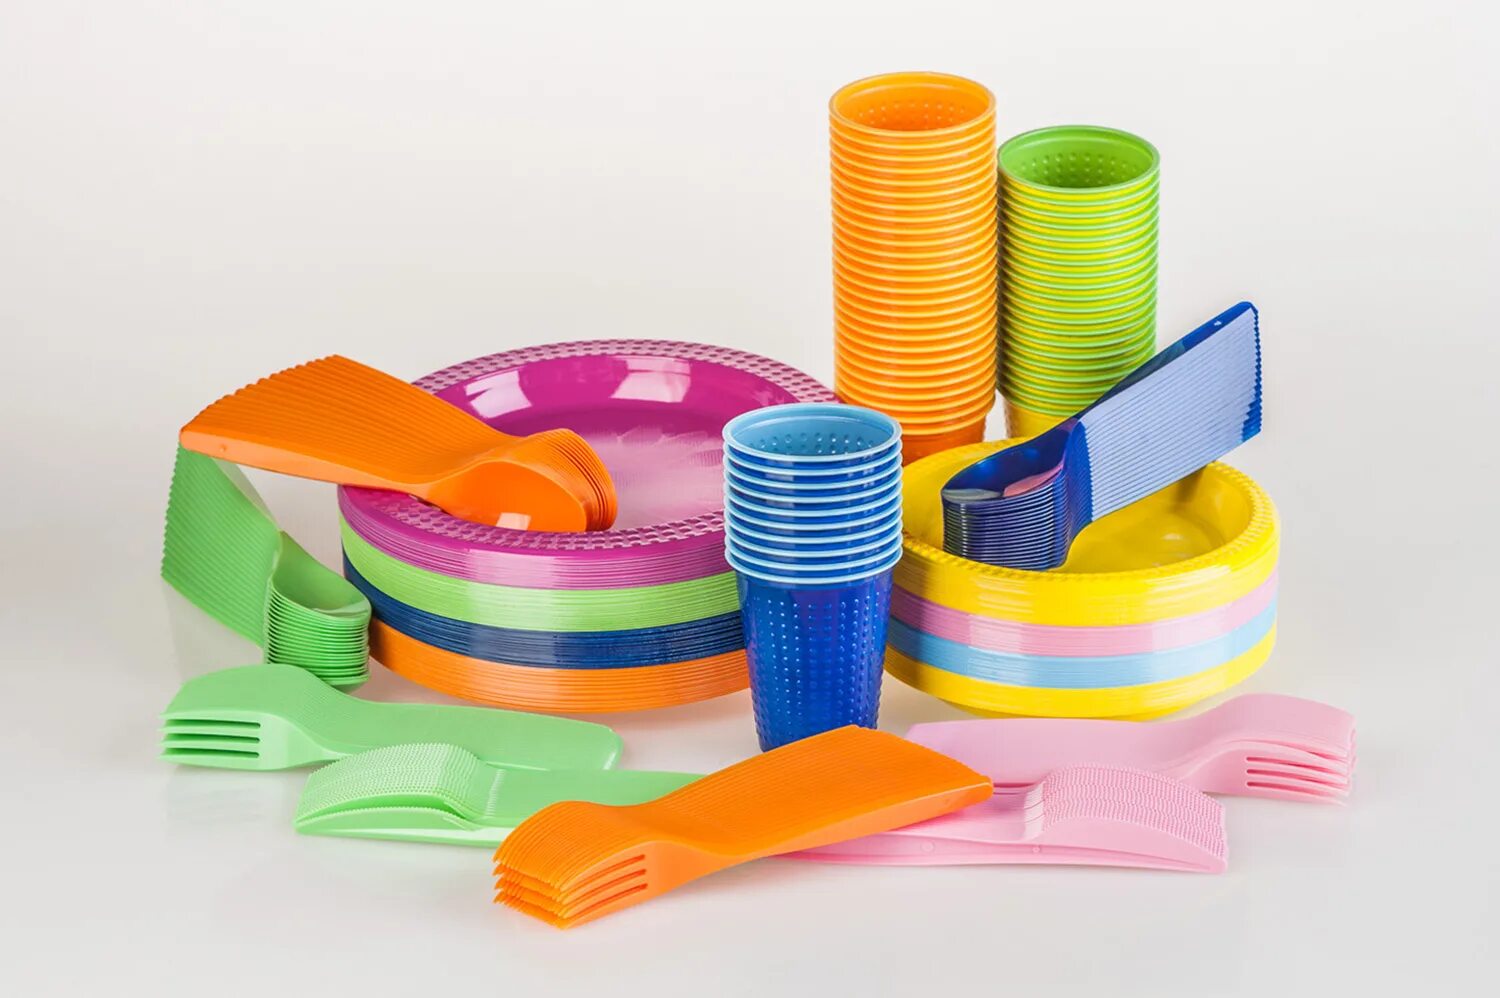 Пластиковая посуда. Посуда одноразовая пластиковая. Пластиковая посуда многоразовая. Пластиковые изделия для детей. Изделия хозяйственного назначения